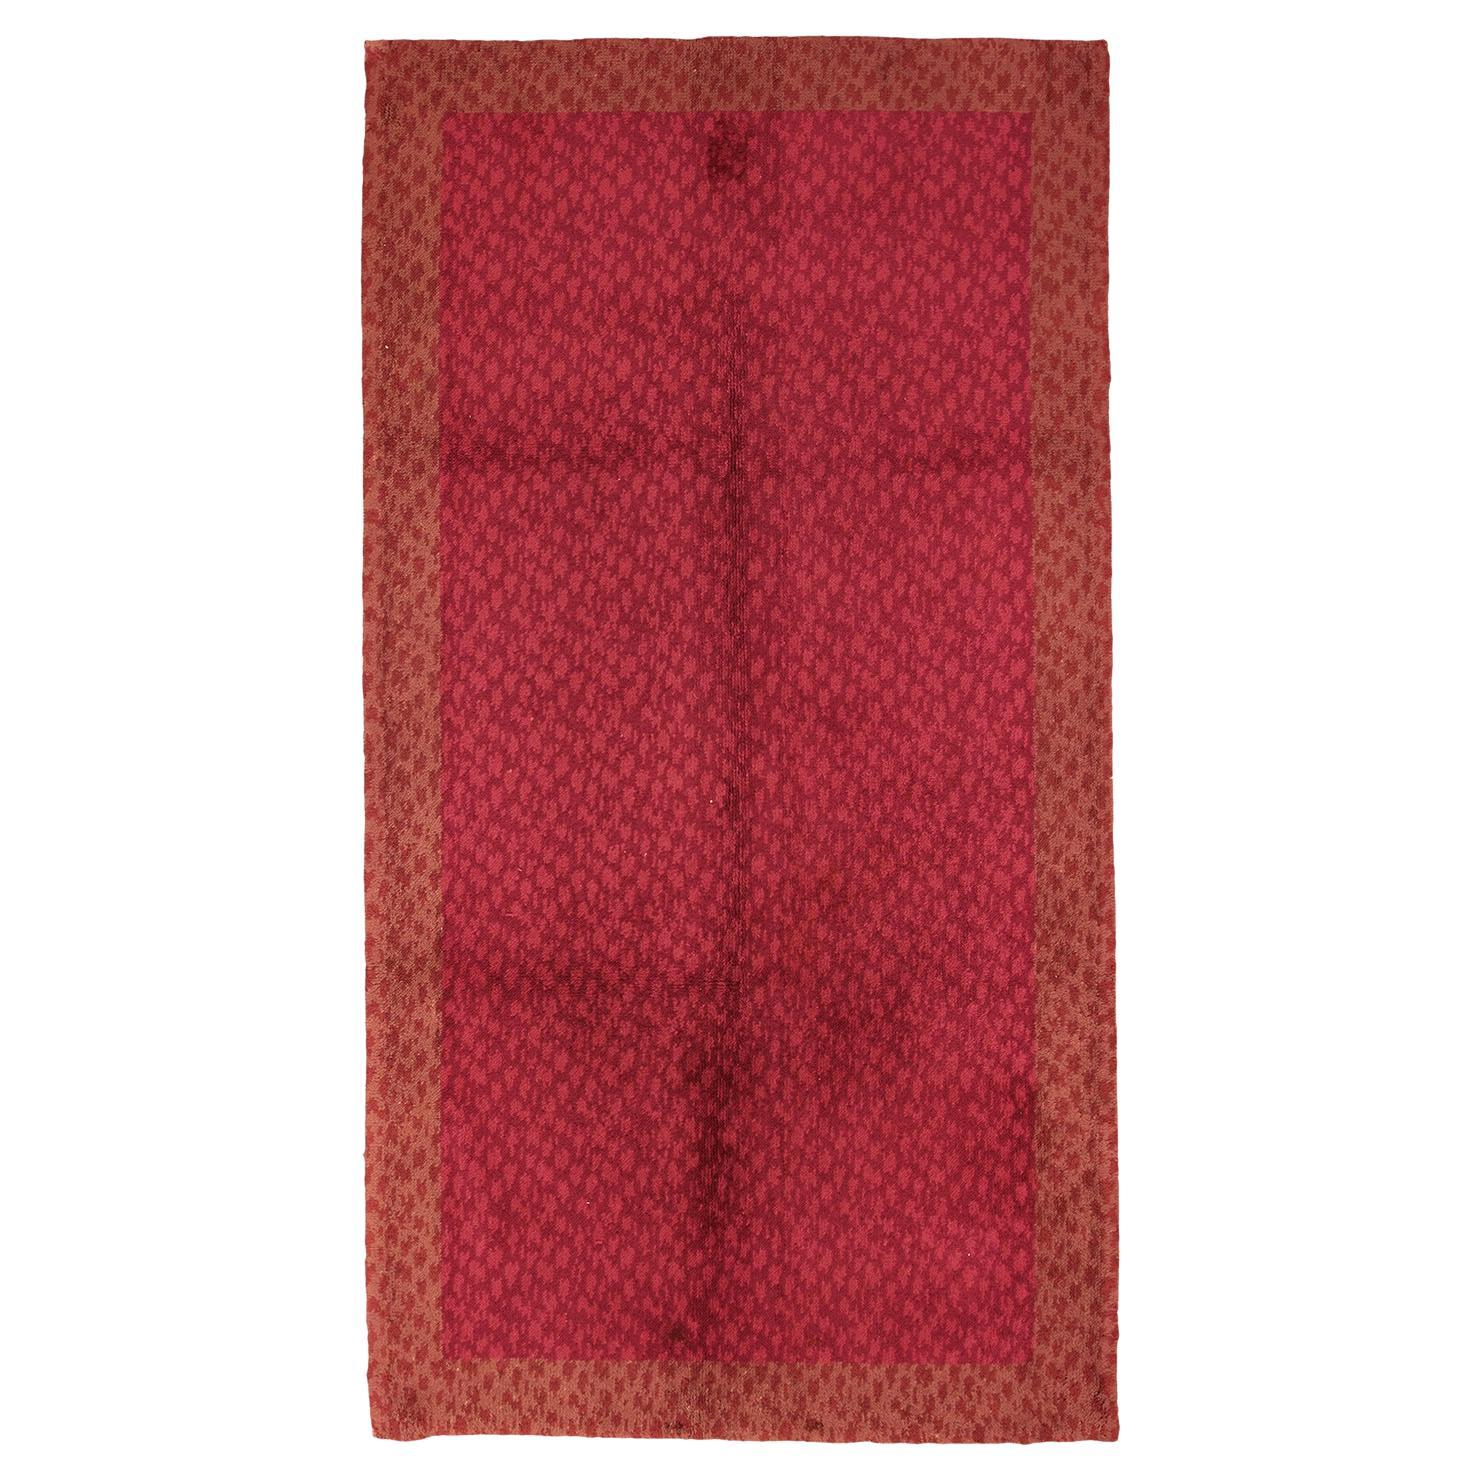 Antiker europäischer roter Teppich mit Hintergrundfarbe